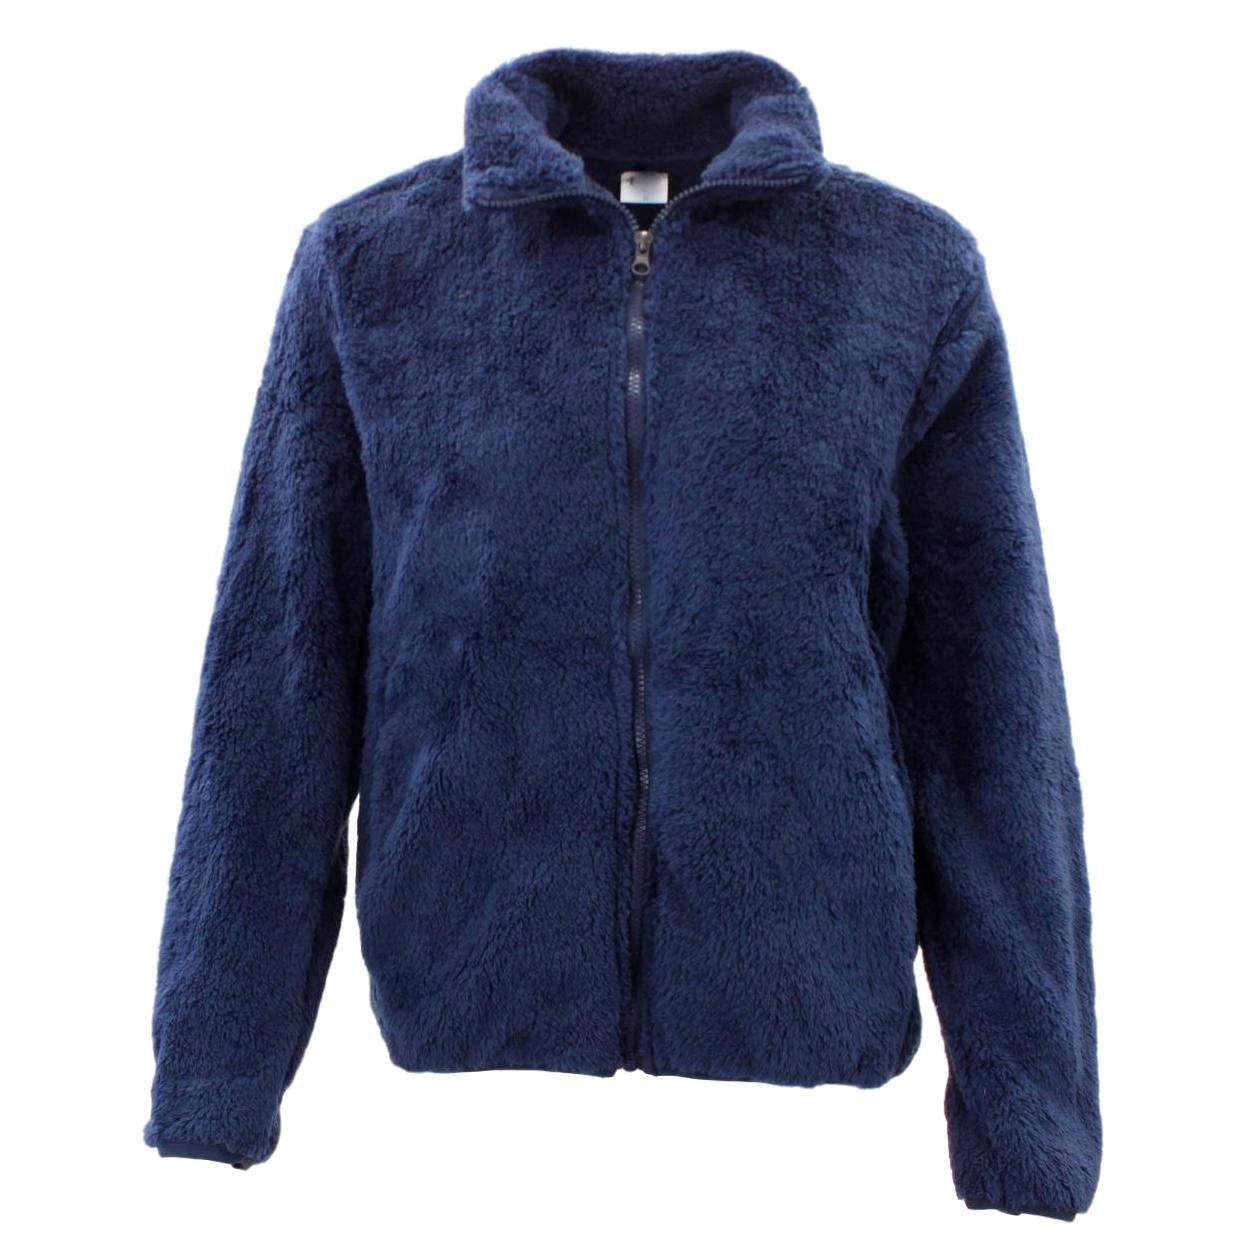 FIL Women's Sherpa Jacket Fleece Winter Warm Soft Teddy Casual Coat Zip ...